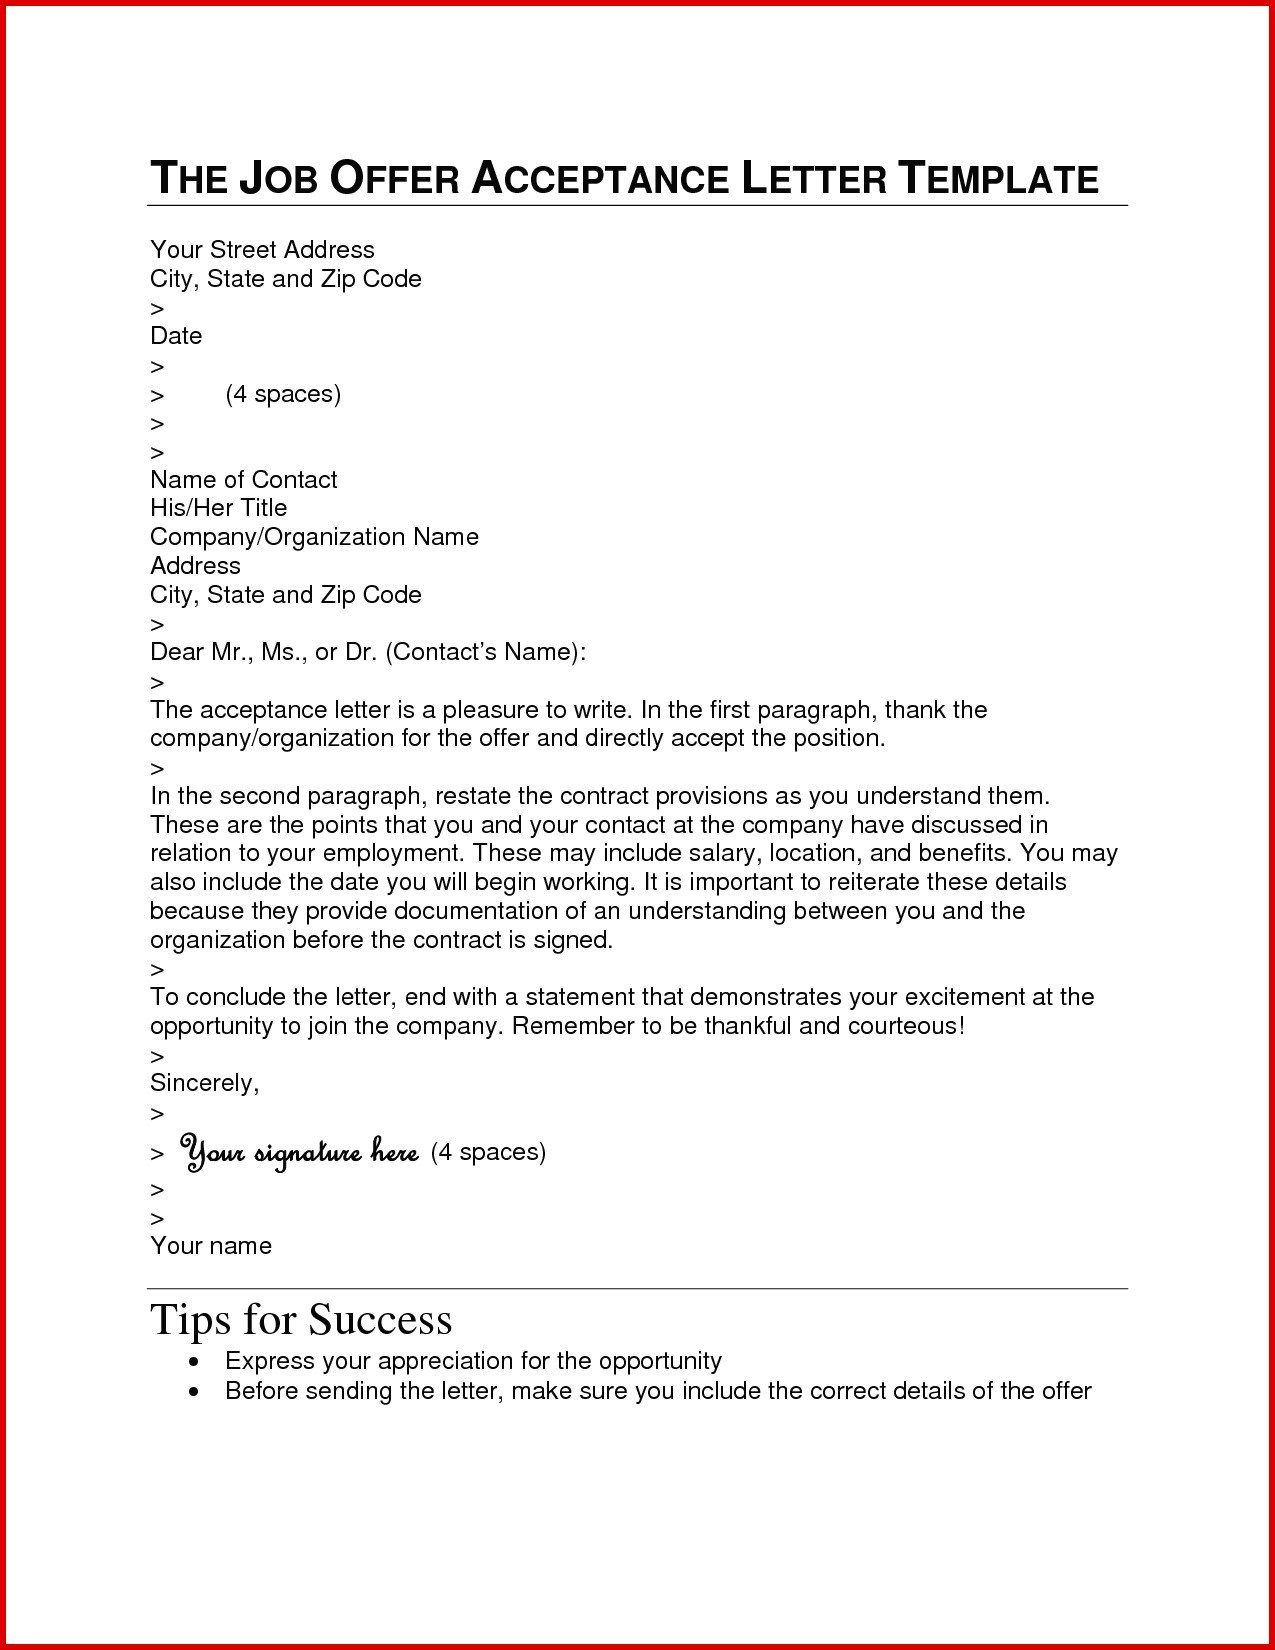 Job Offer Acceptance Letter Template - Cpt Job Fer Letter Sample Fresh Sample Resignation Letter Template